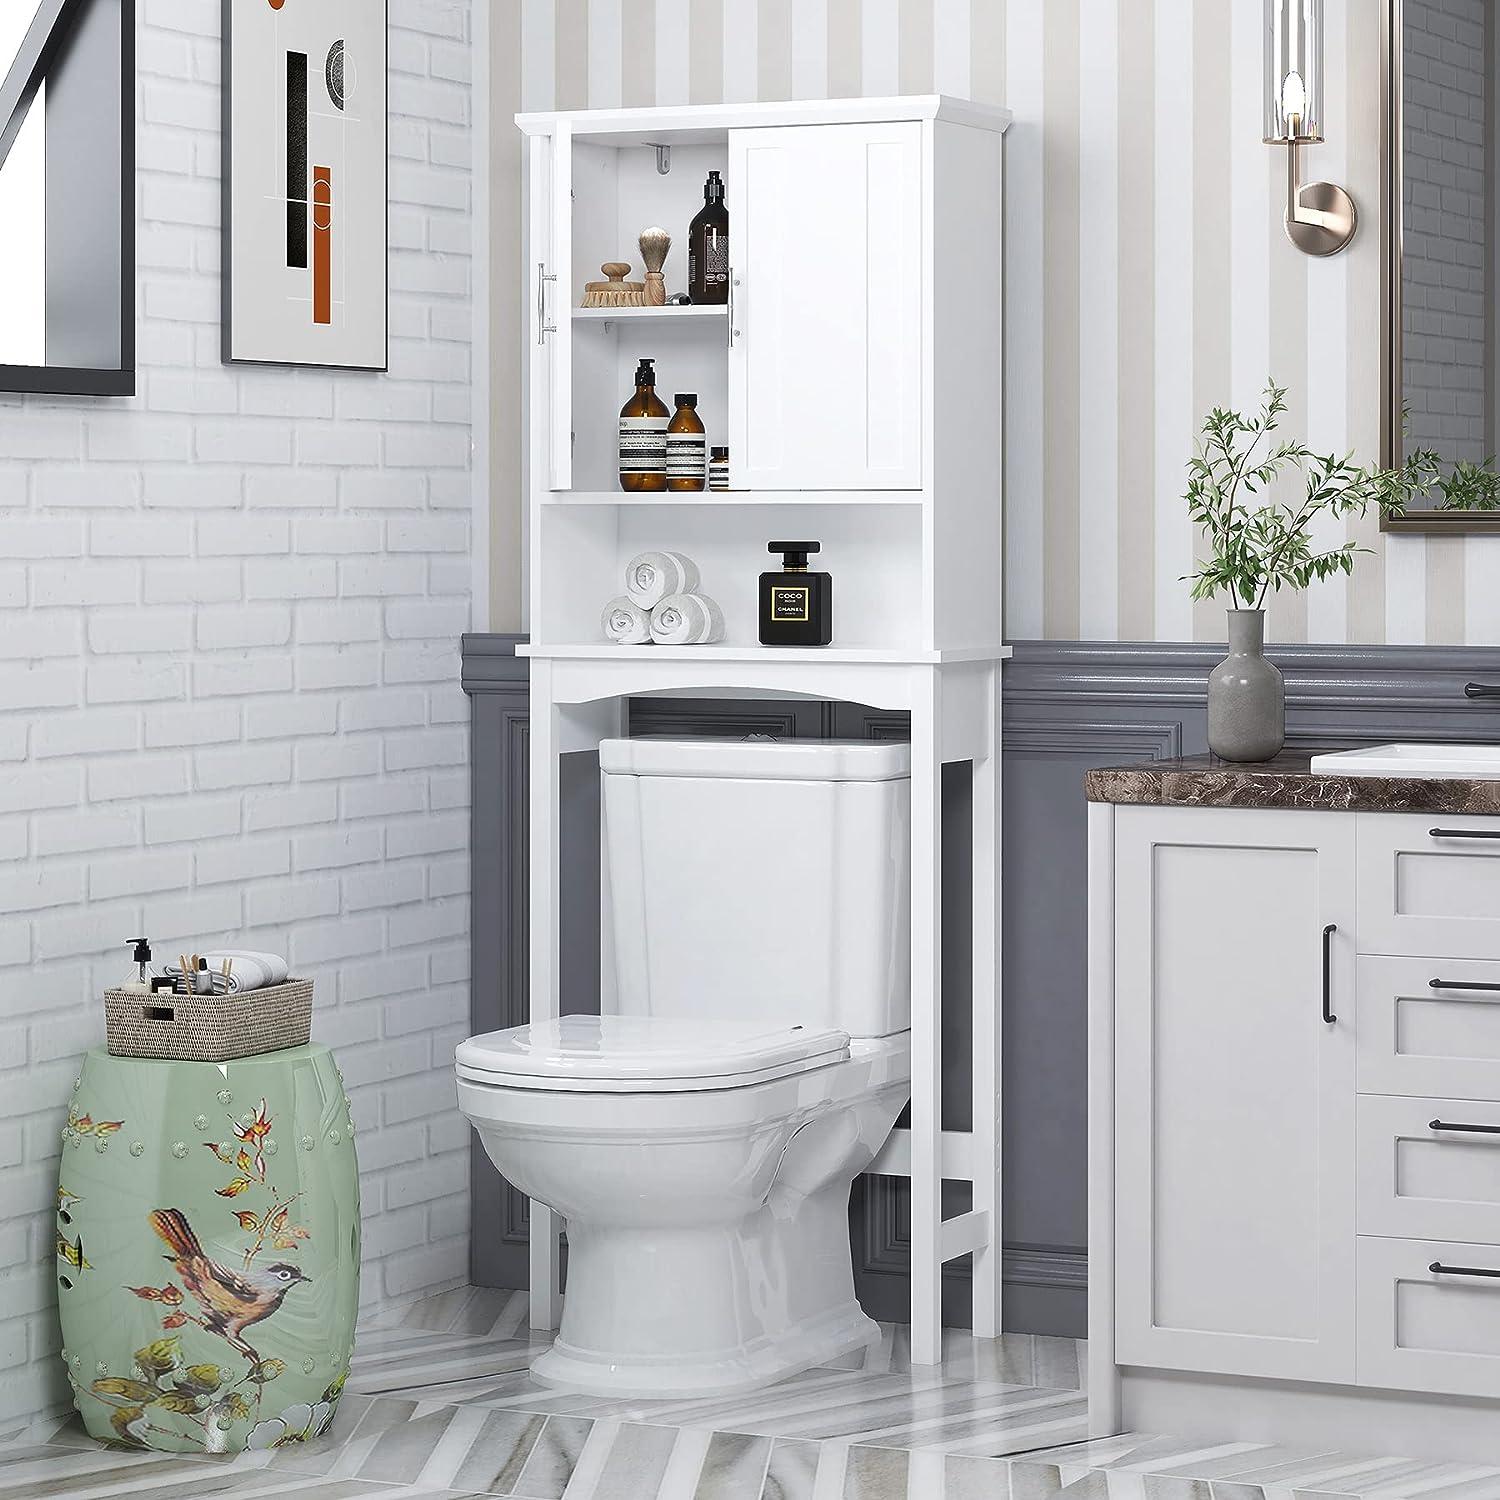 Moderno armario de almacenamiento de madera para colocar sobre el inodoro  para el hogar, baño, color blanco